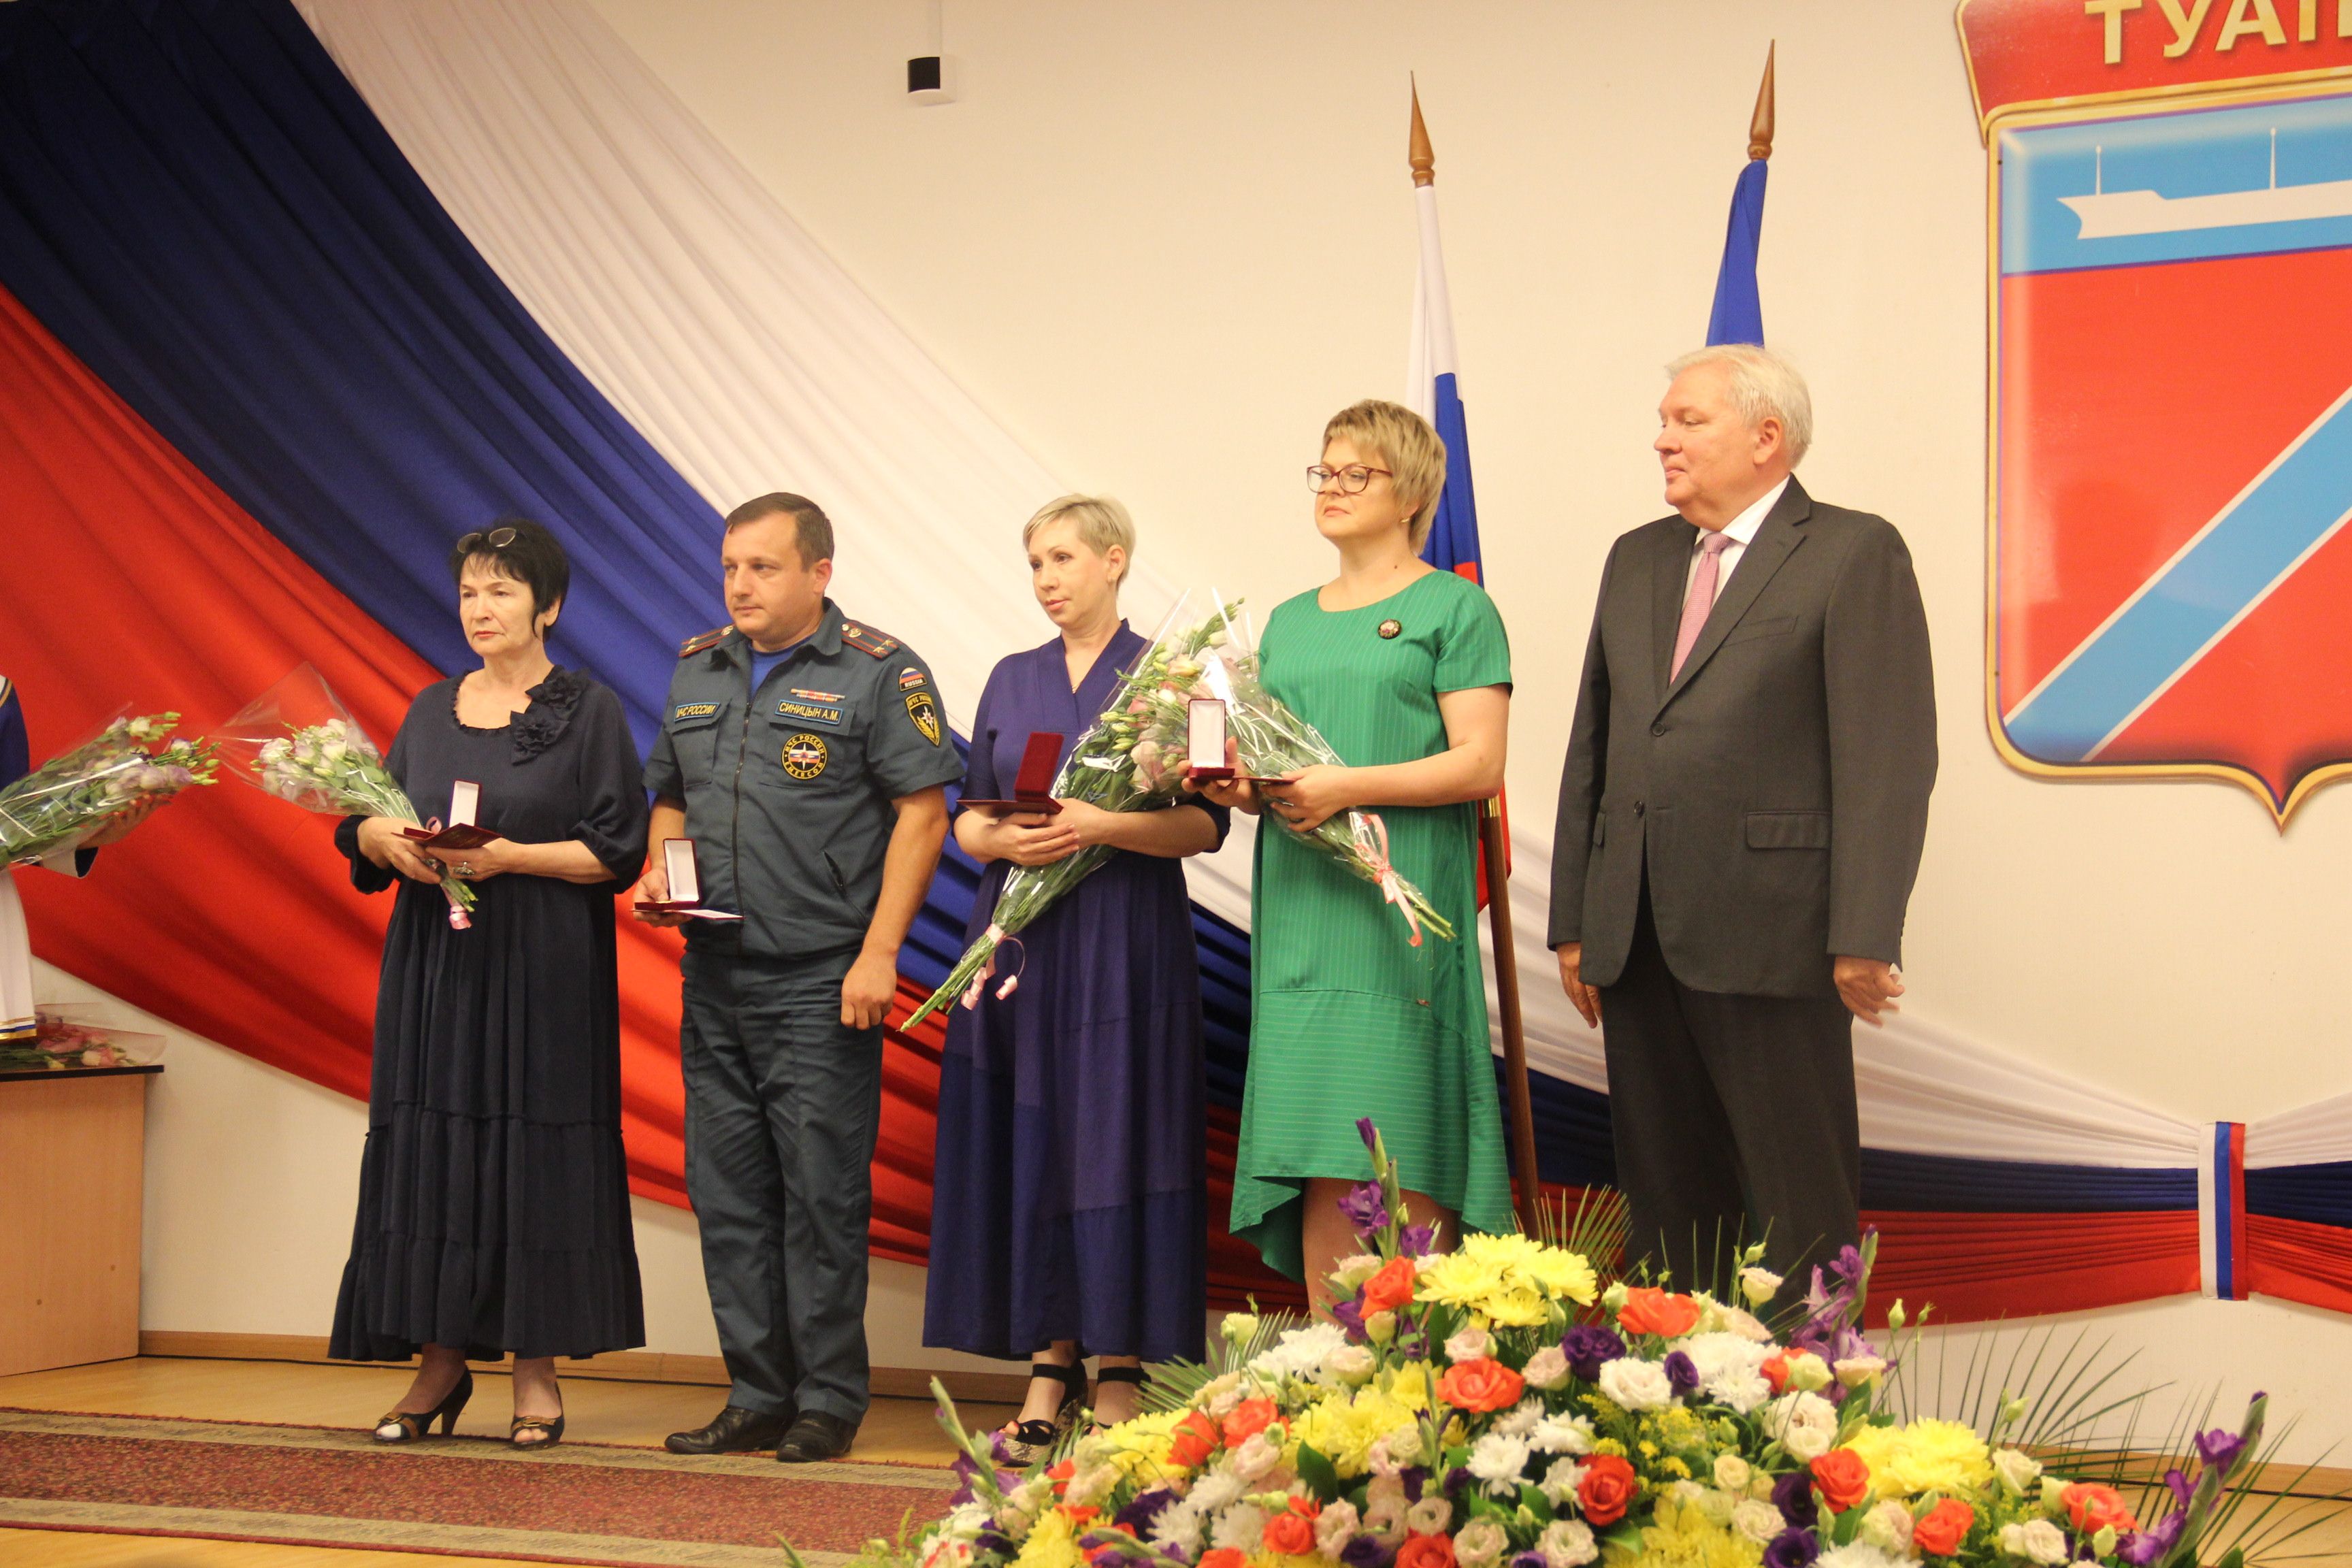 Работники отрасли культуры города Туапсе удостоены почётных наград города Туапсе 